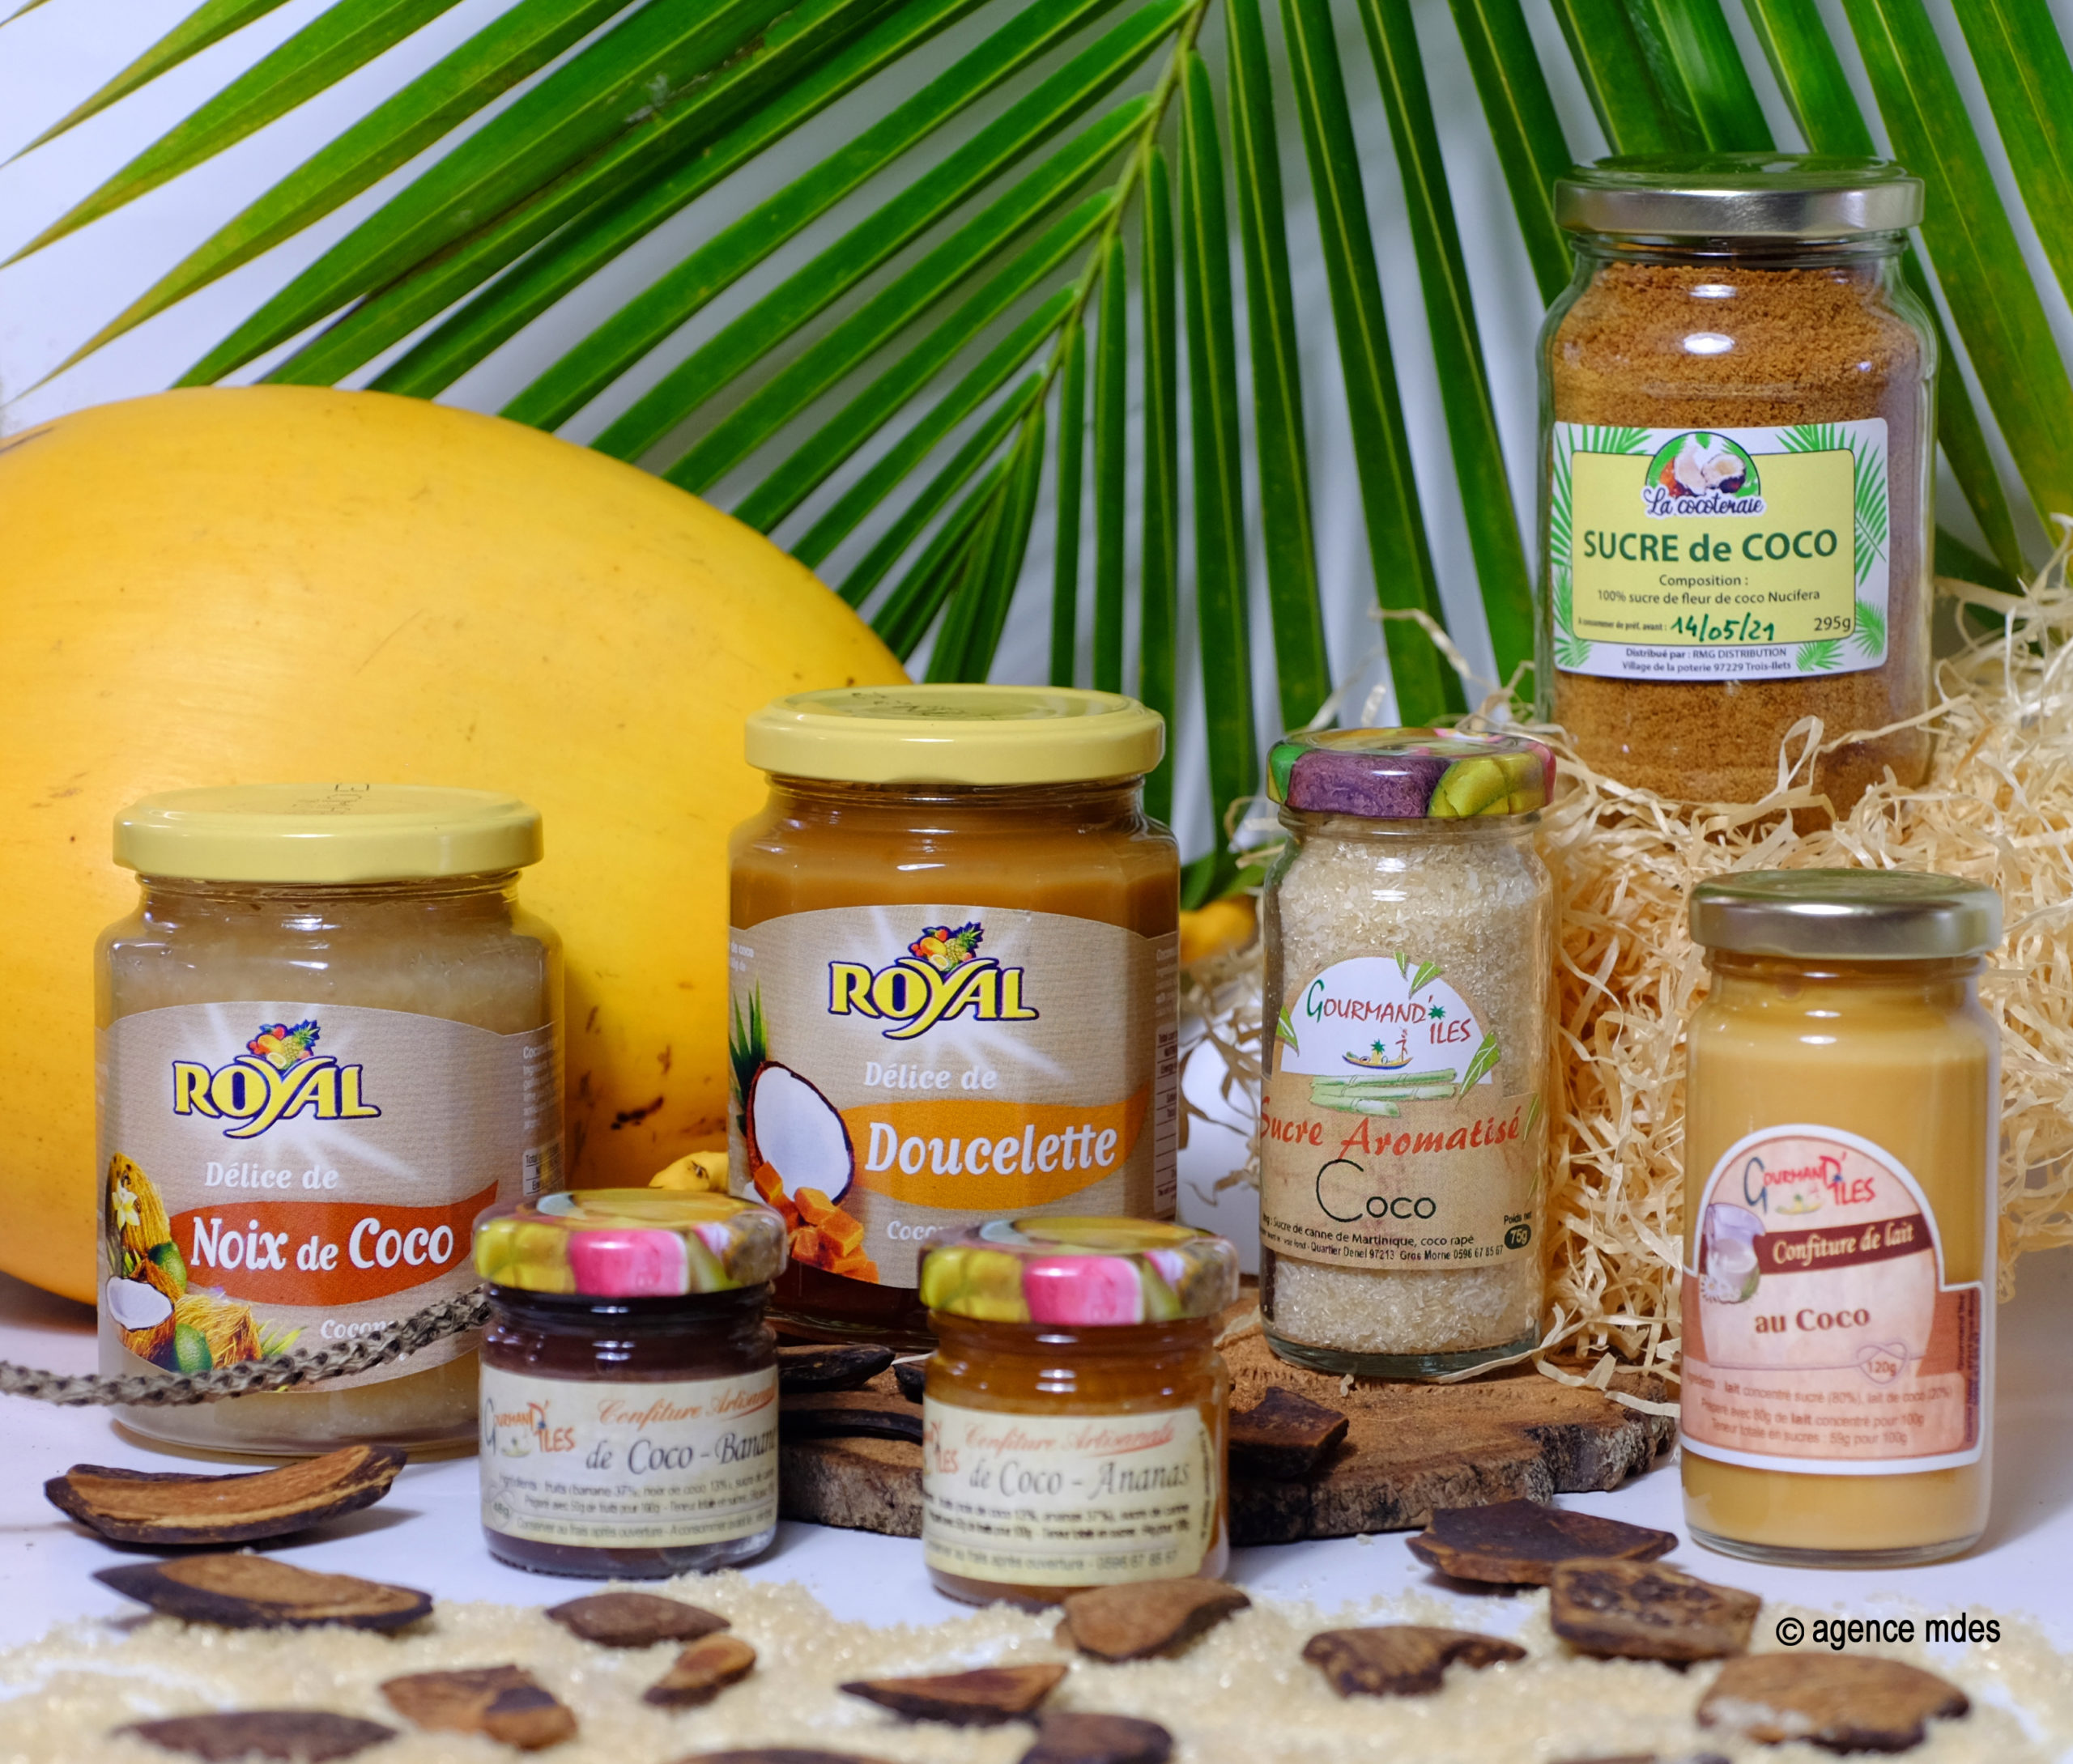 LA COCOTERAIE – Artisanat, Produit de Beauté et Gastronomie à base de noix de Coco